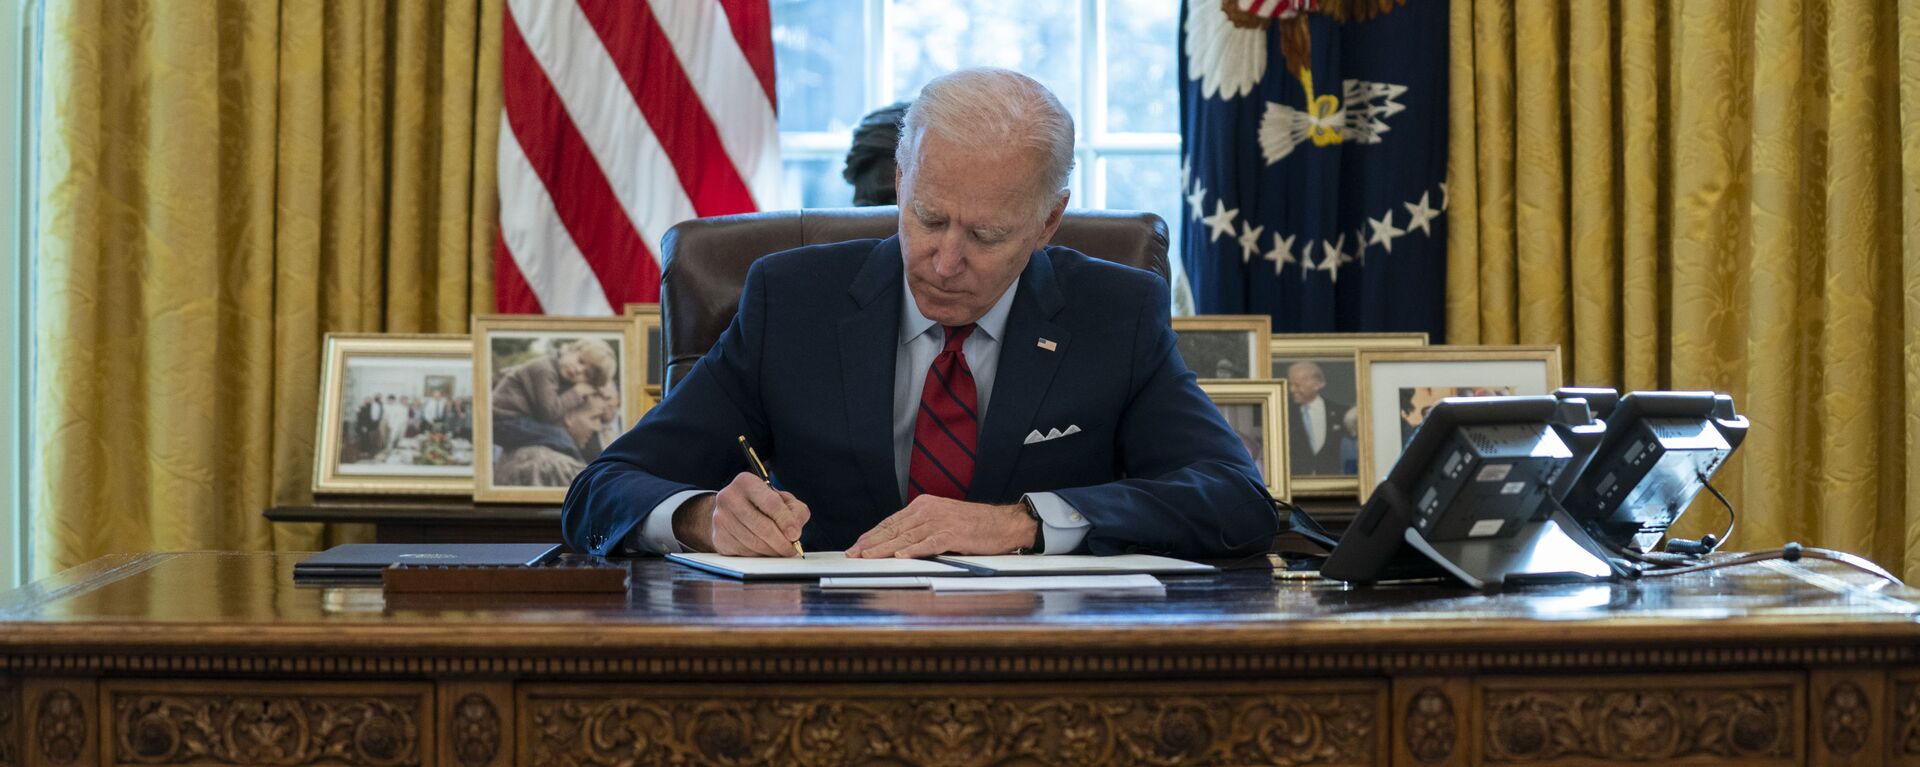 Joe Biden, presidente de EEUU, firma varios documentos ejecutivos en el Despacho Oval de la Casa Blanca, en Washington, el 28 de enero del 2021 - Sputnik Mundo, 1920, 11.03.2021